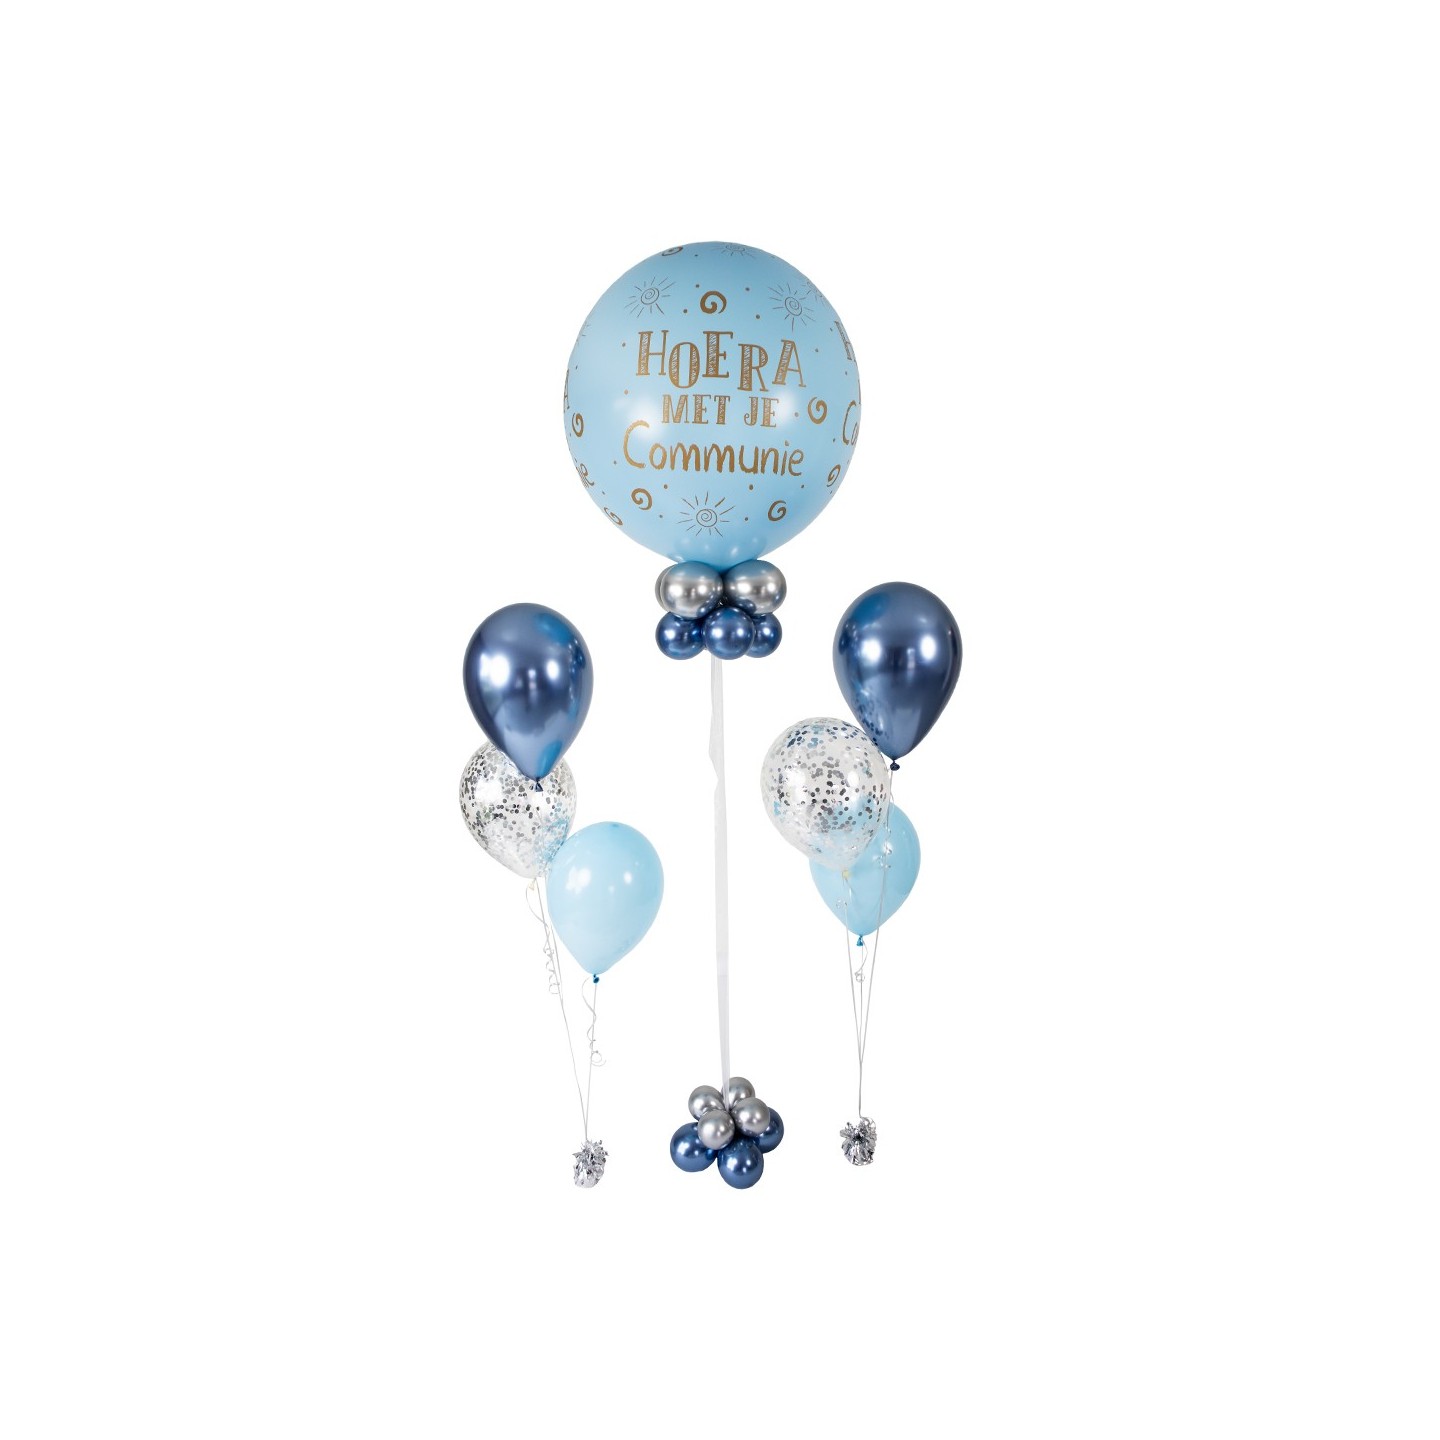 Ballondecoratie communie ballonnen tros blauw boeket